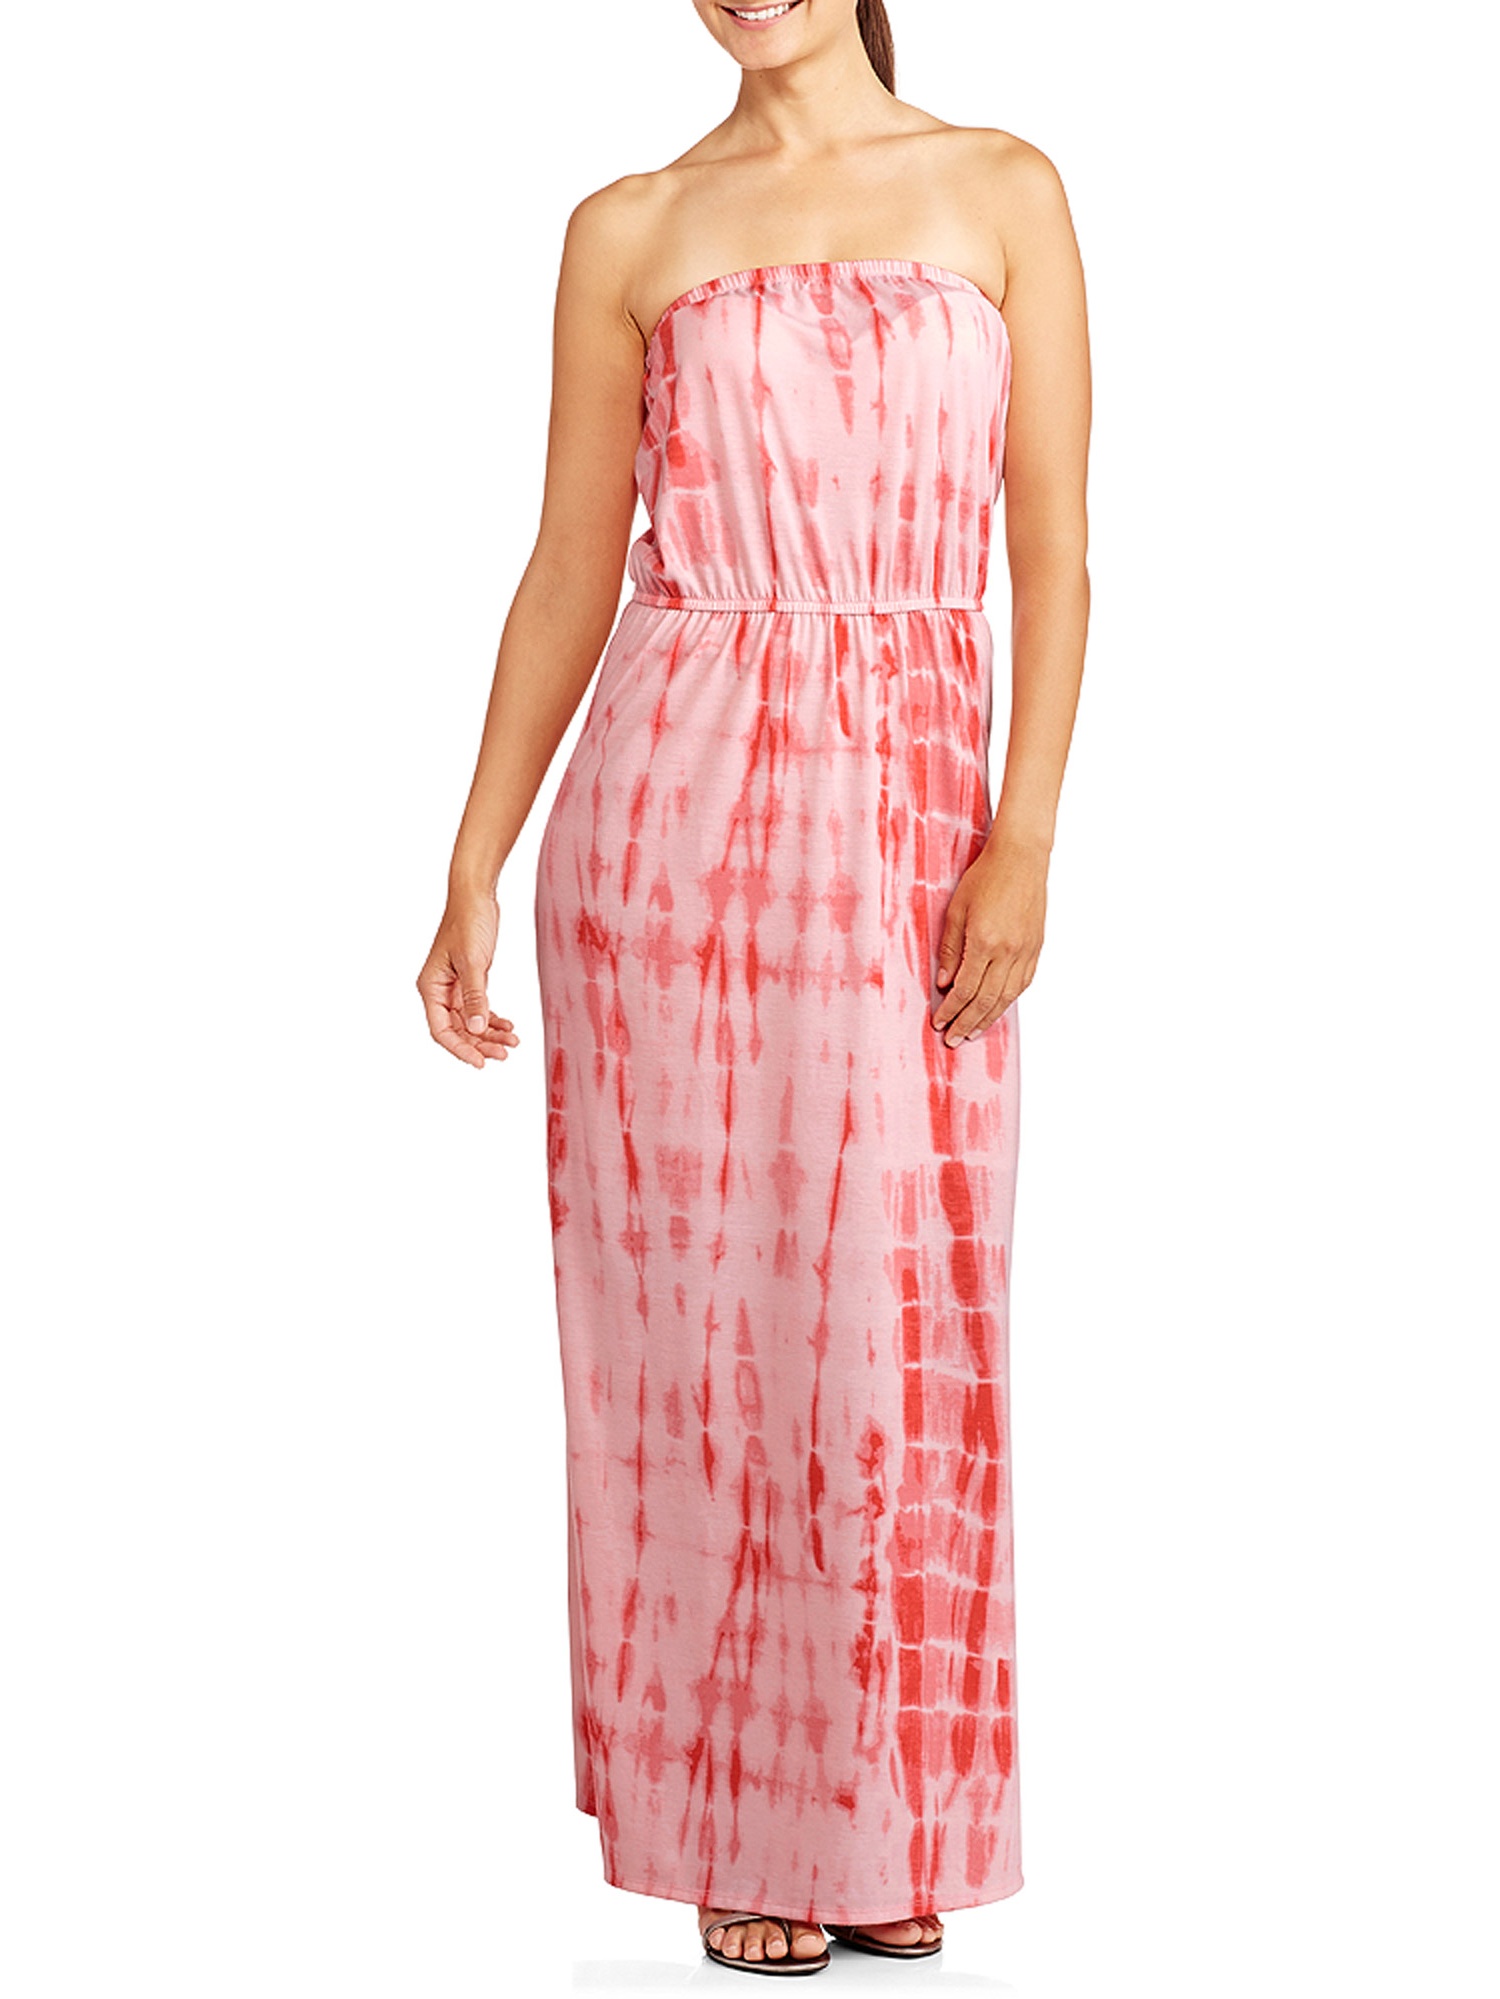 Women's Tye Dye Strapless Maxi Dress - image 1 of 2